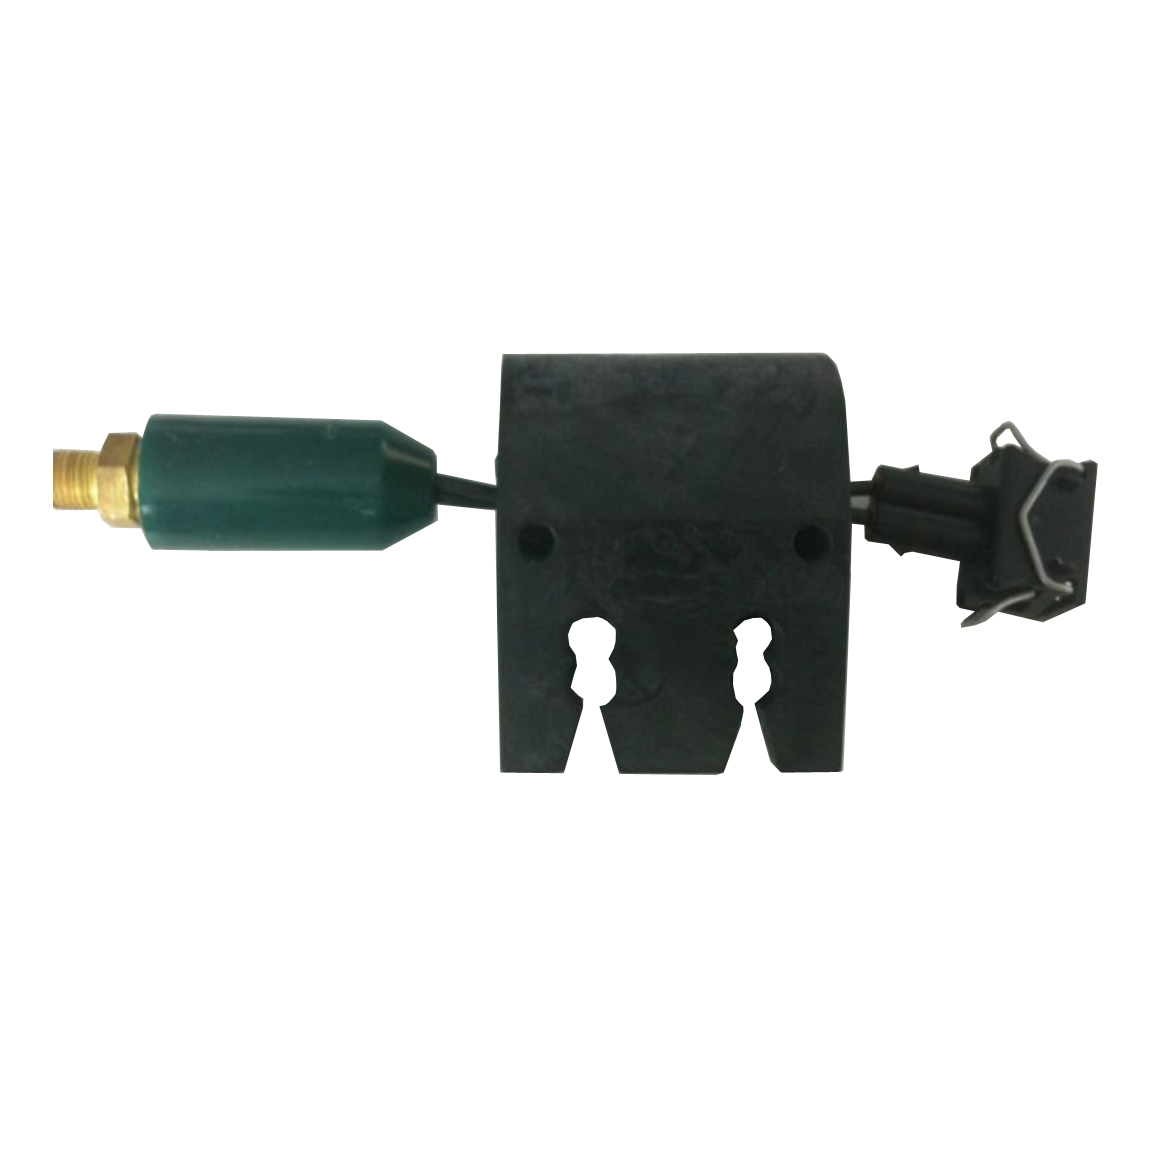 Oil Pressure Sensor 1,1bar, M10*1